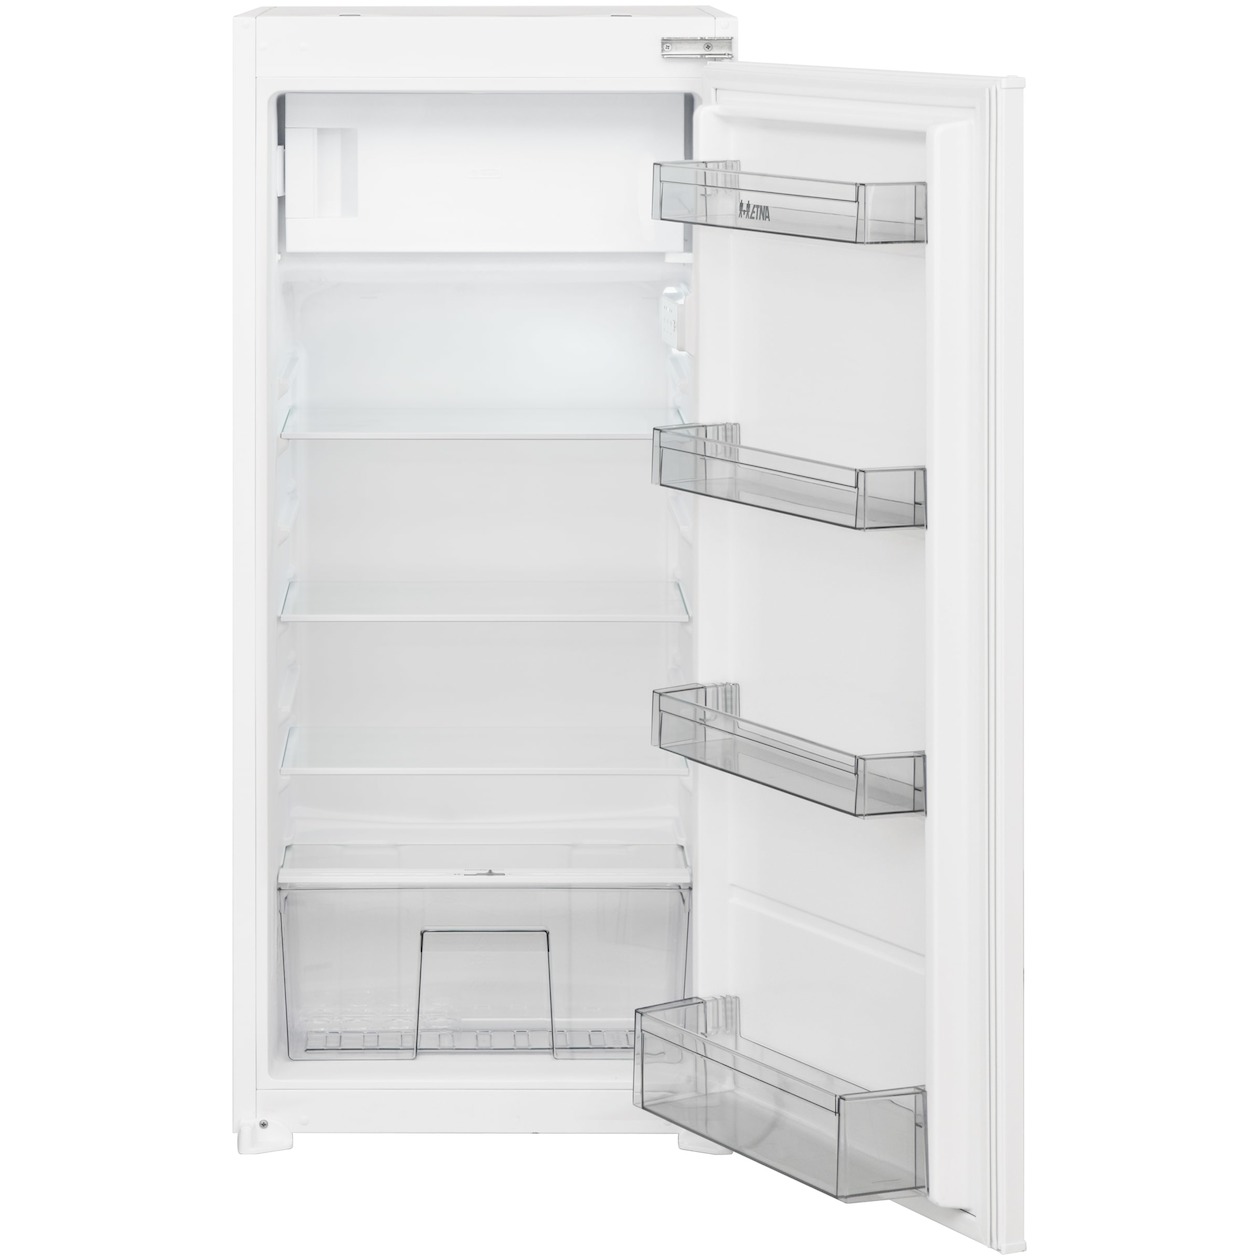 Etna KVS5122 Onderbouw koelkast met vriezer